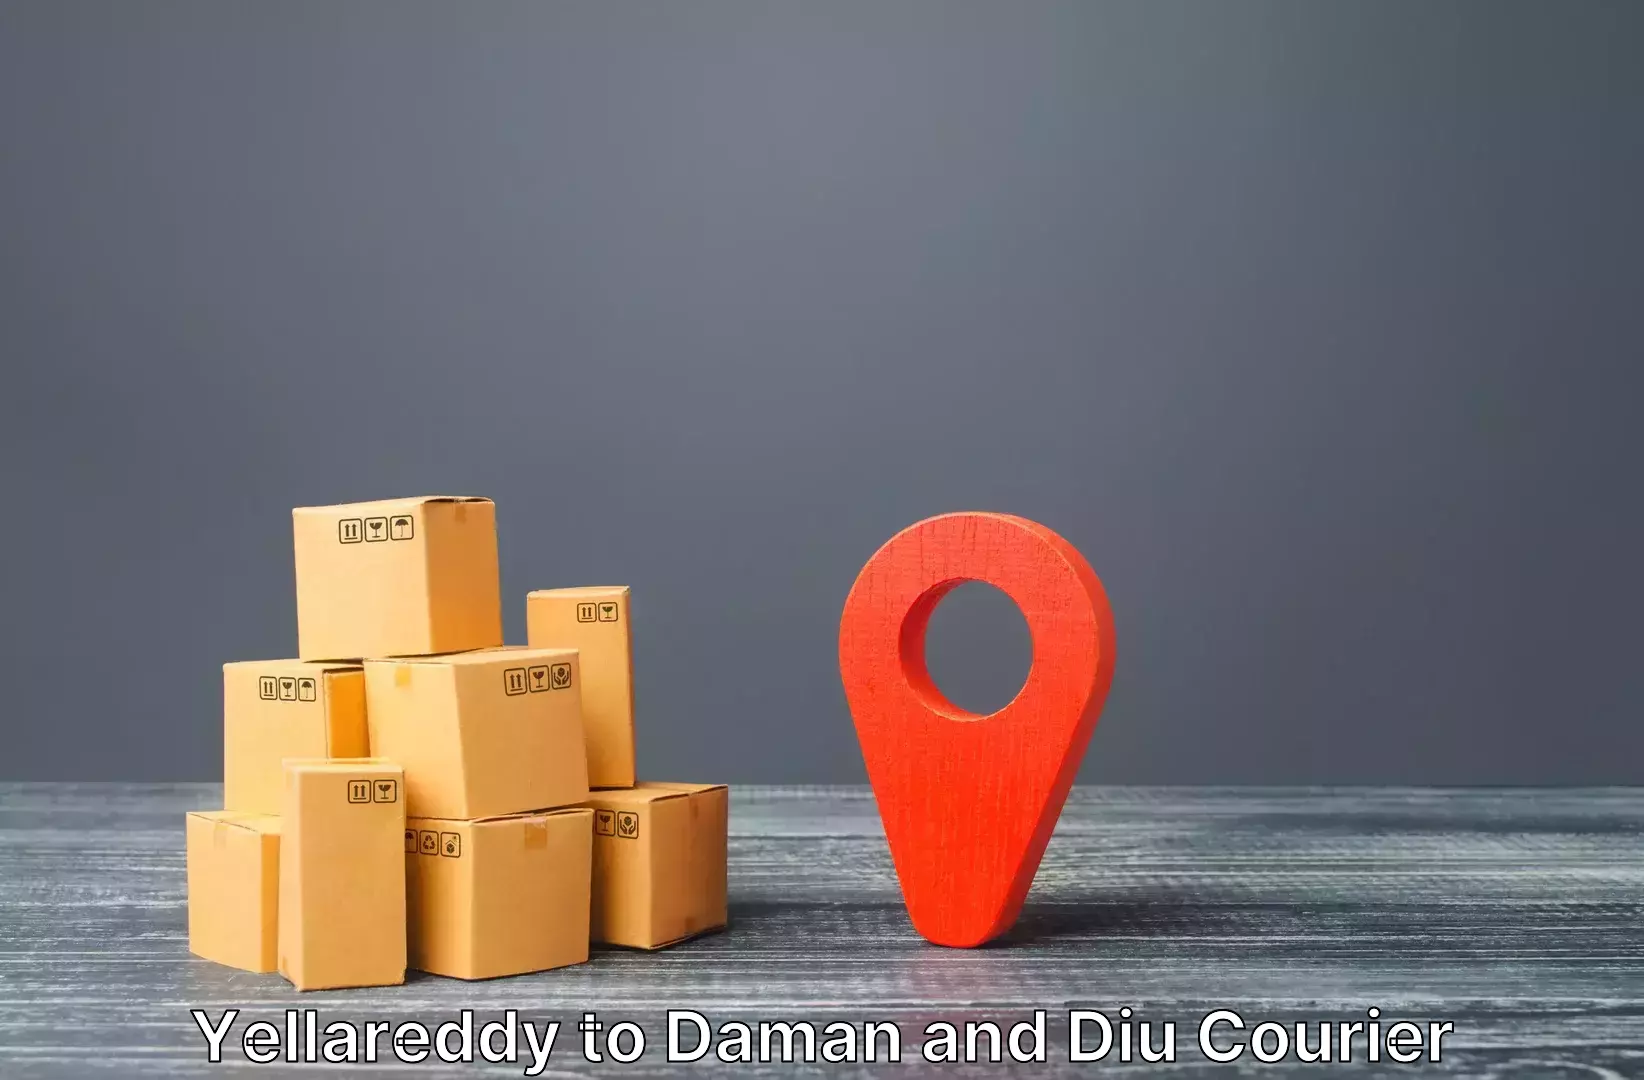 Luggage shipping discounts Yellareddy to Daman and Diu